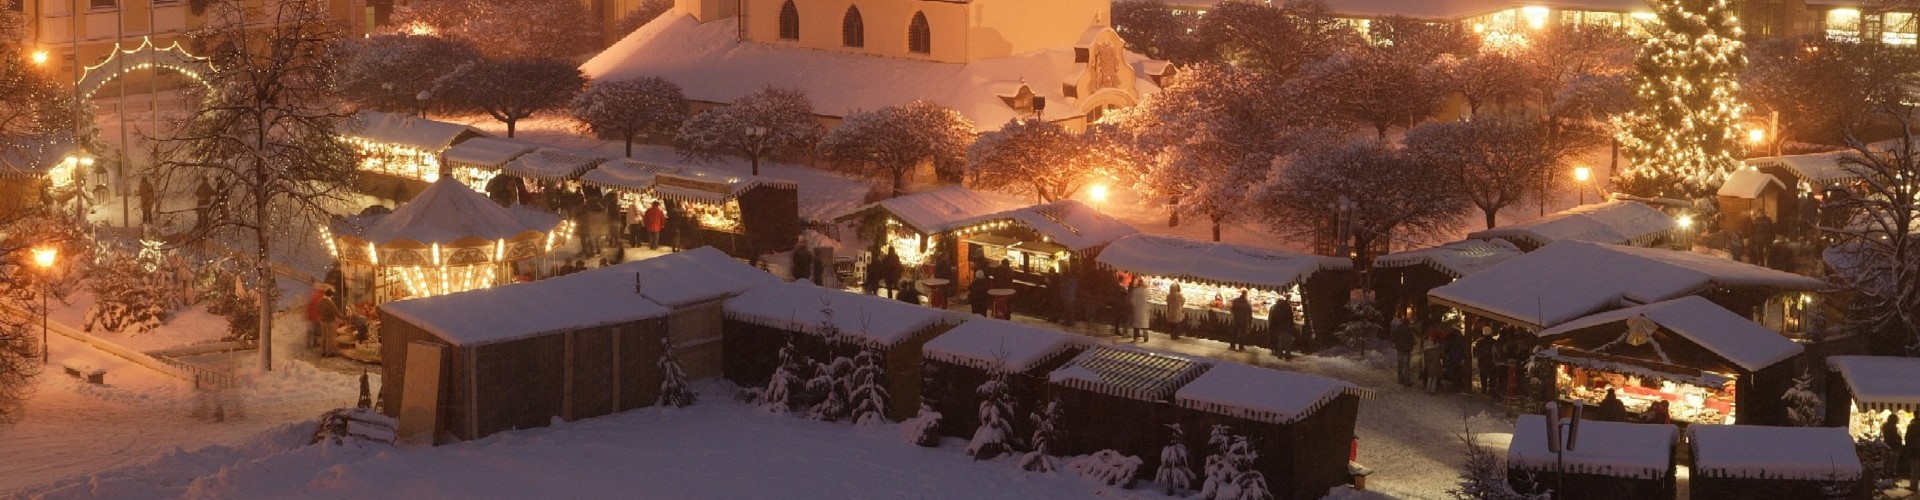 Der Altöttinger Christkindlmarkt am Kapellplatz mit viel Schnee.